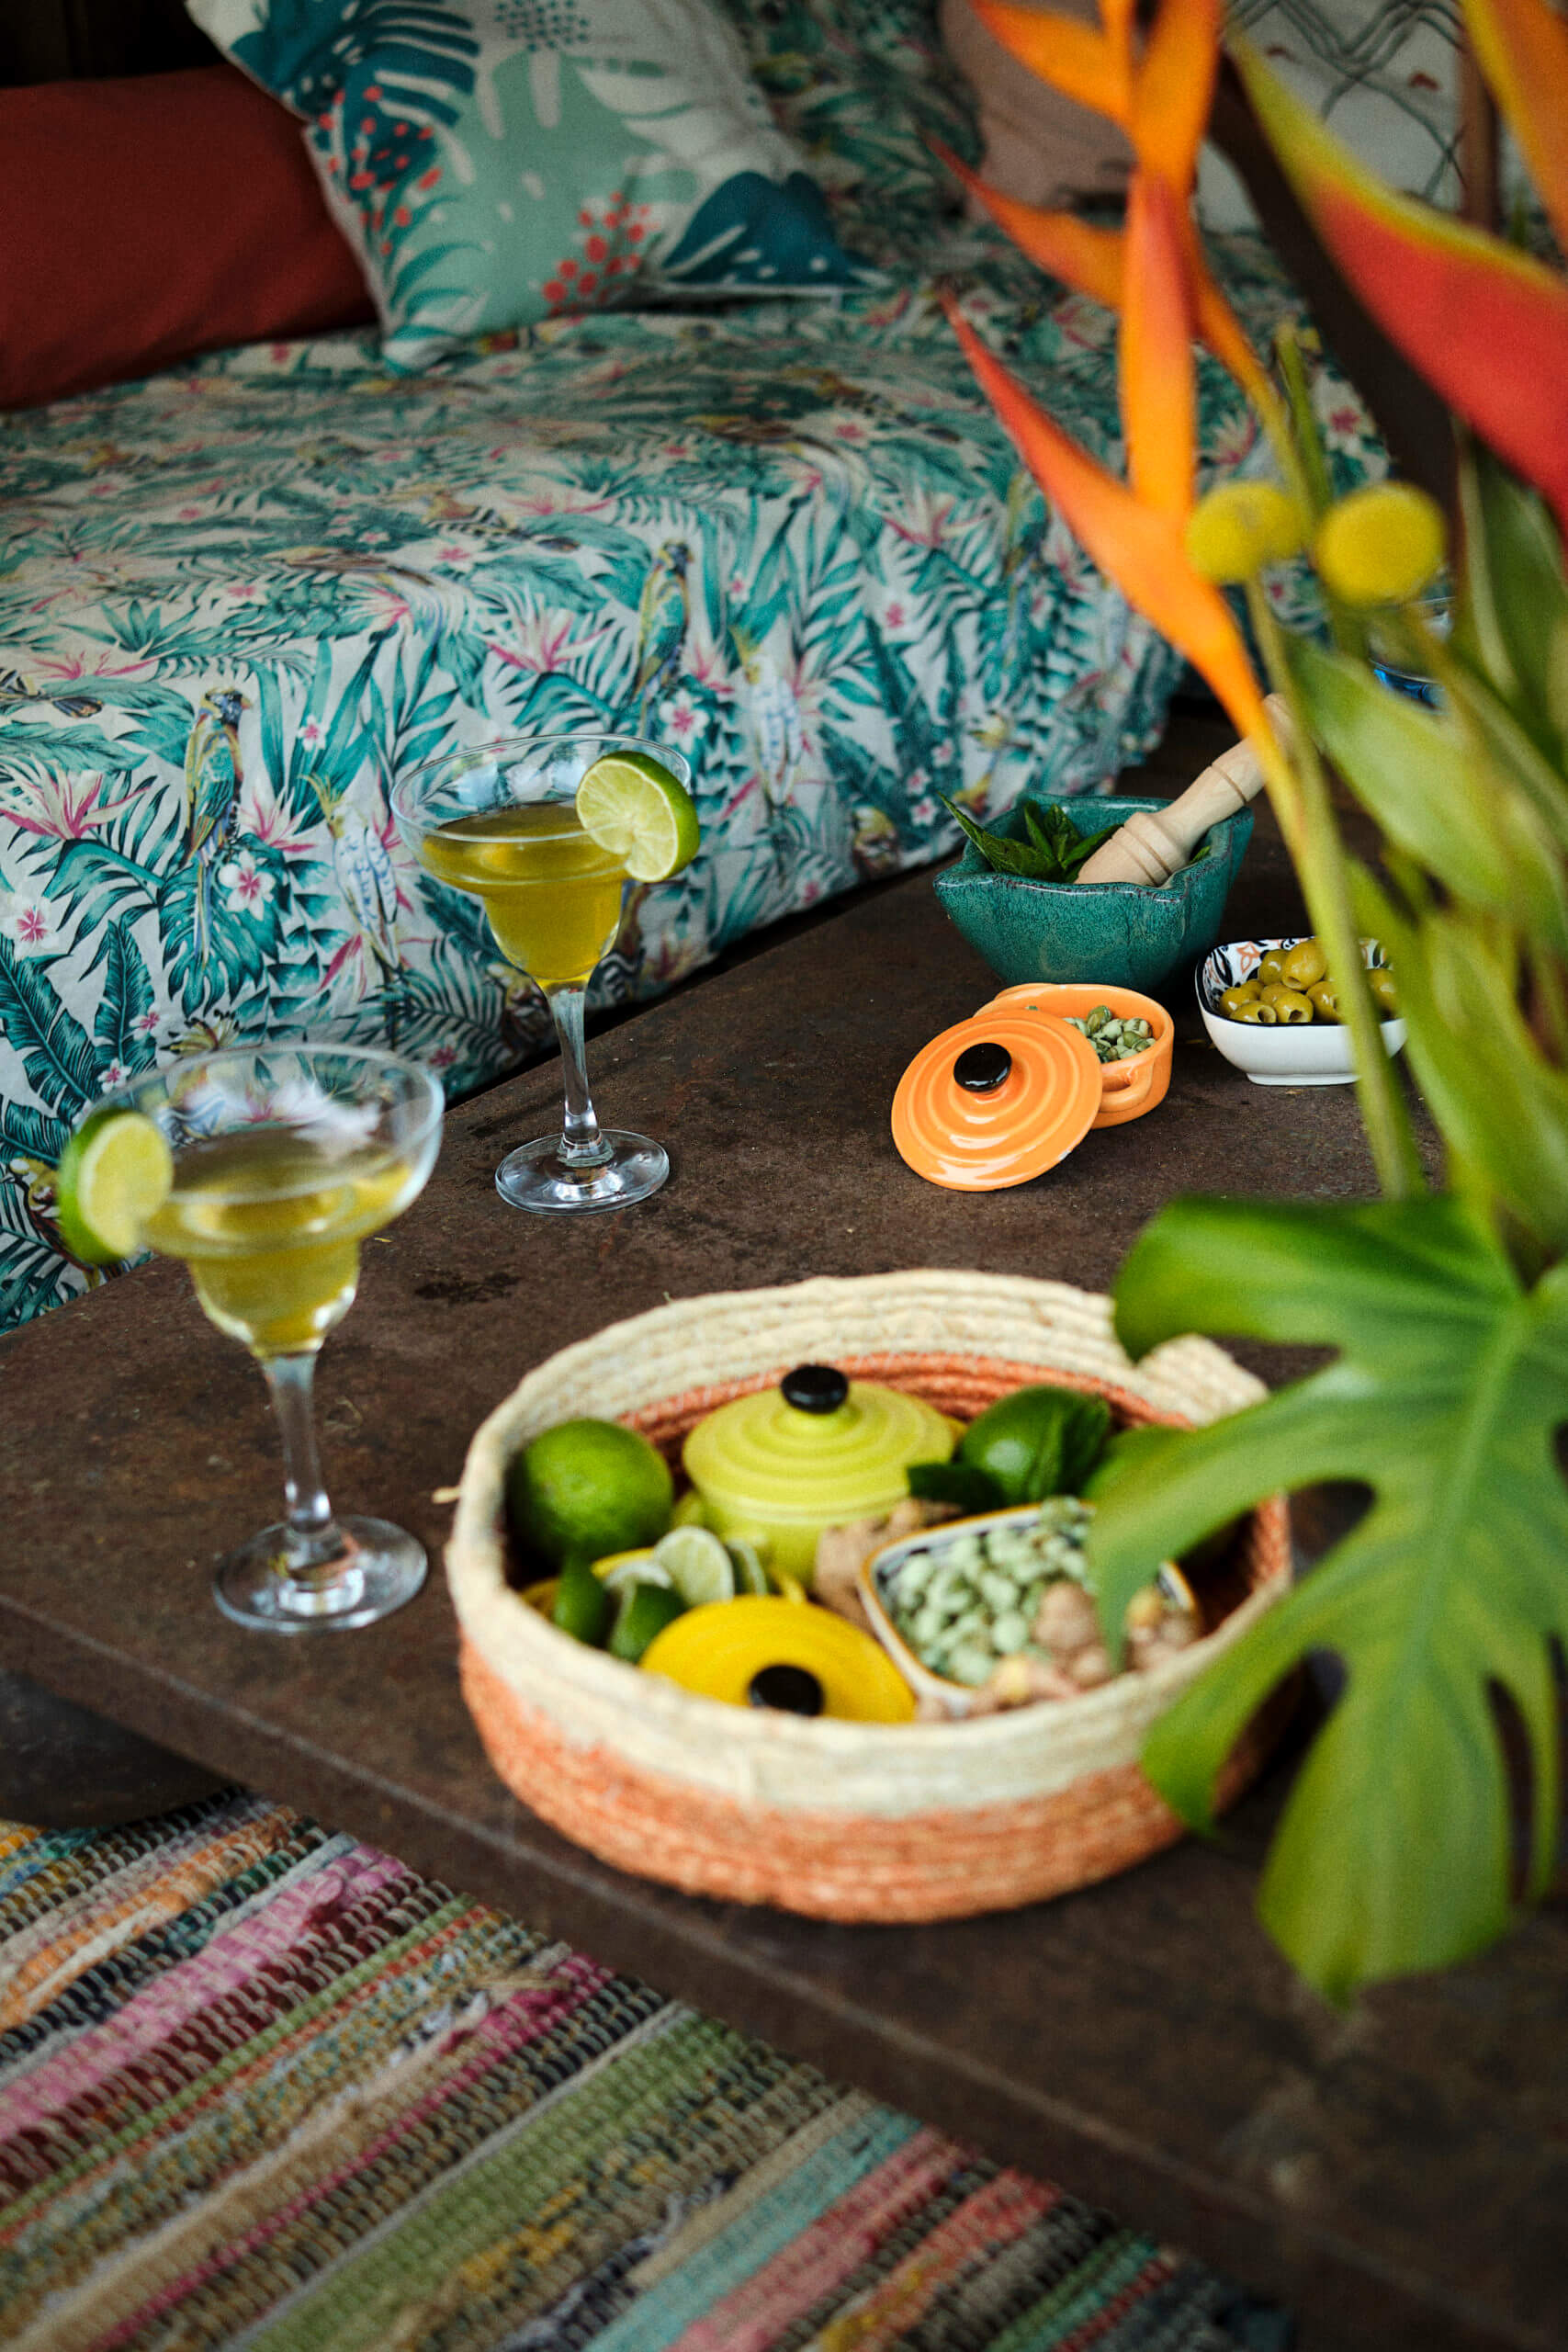 Salon de jardin avec table dressée pour la bamboche : cocktails, citrons verts, pots colorés, cacahuètes au wasabi, etc.